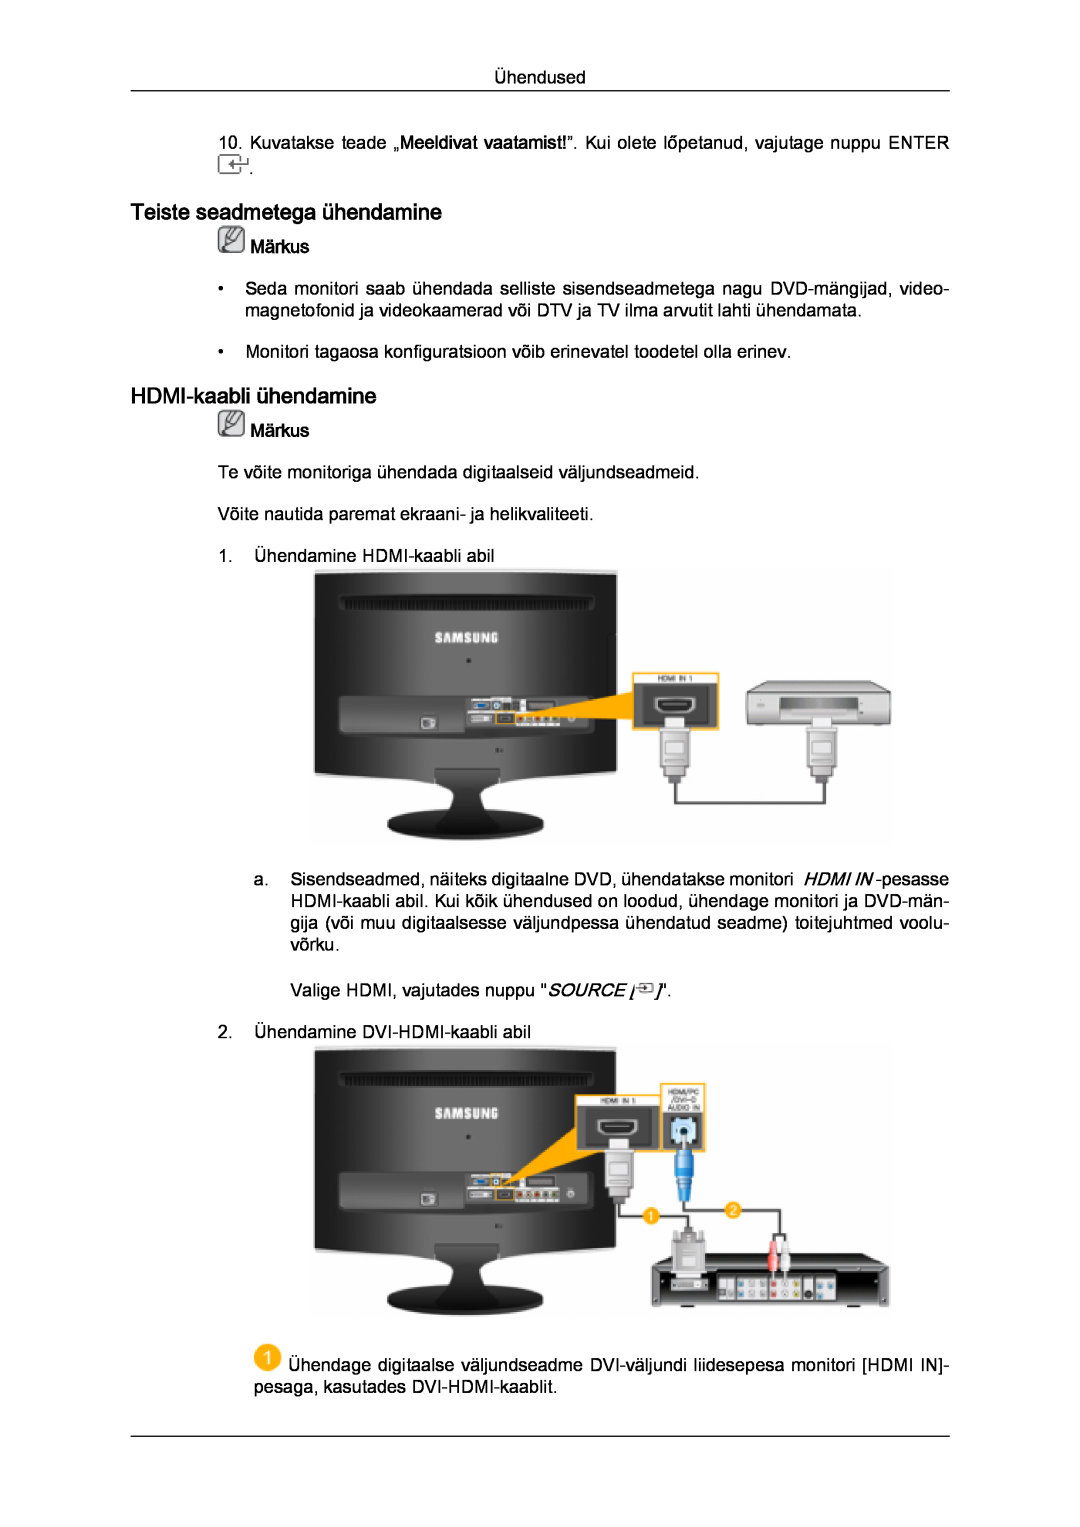 Samsung LS24TDDSUV/EN, LS20TDVSUV/EN, LS24TDVSUV/EN manual Teiste seadmetega ühendamine, HDMI-kaabli ühendamine, Märkus 